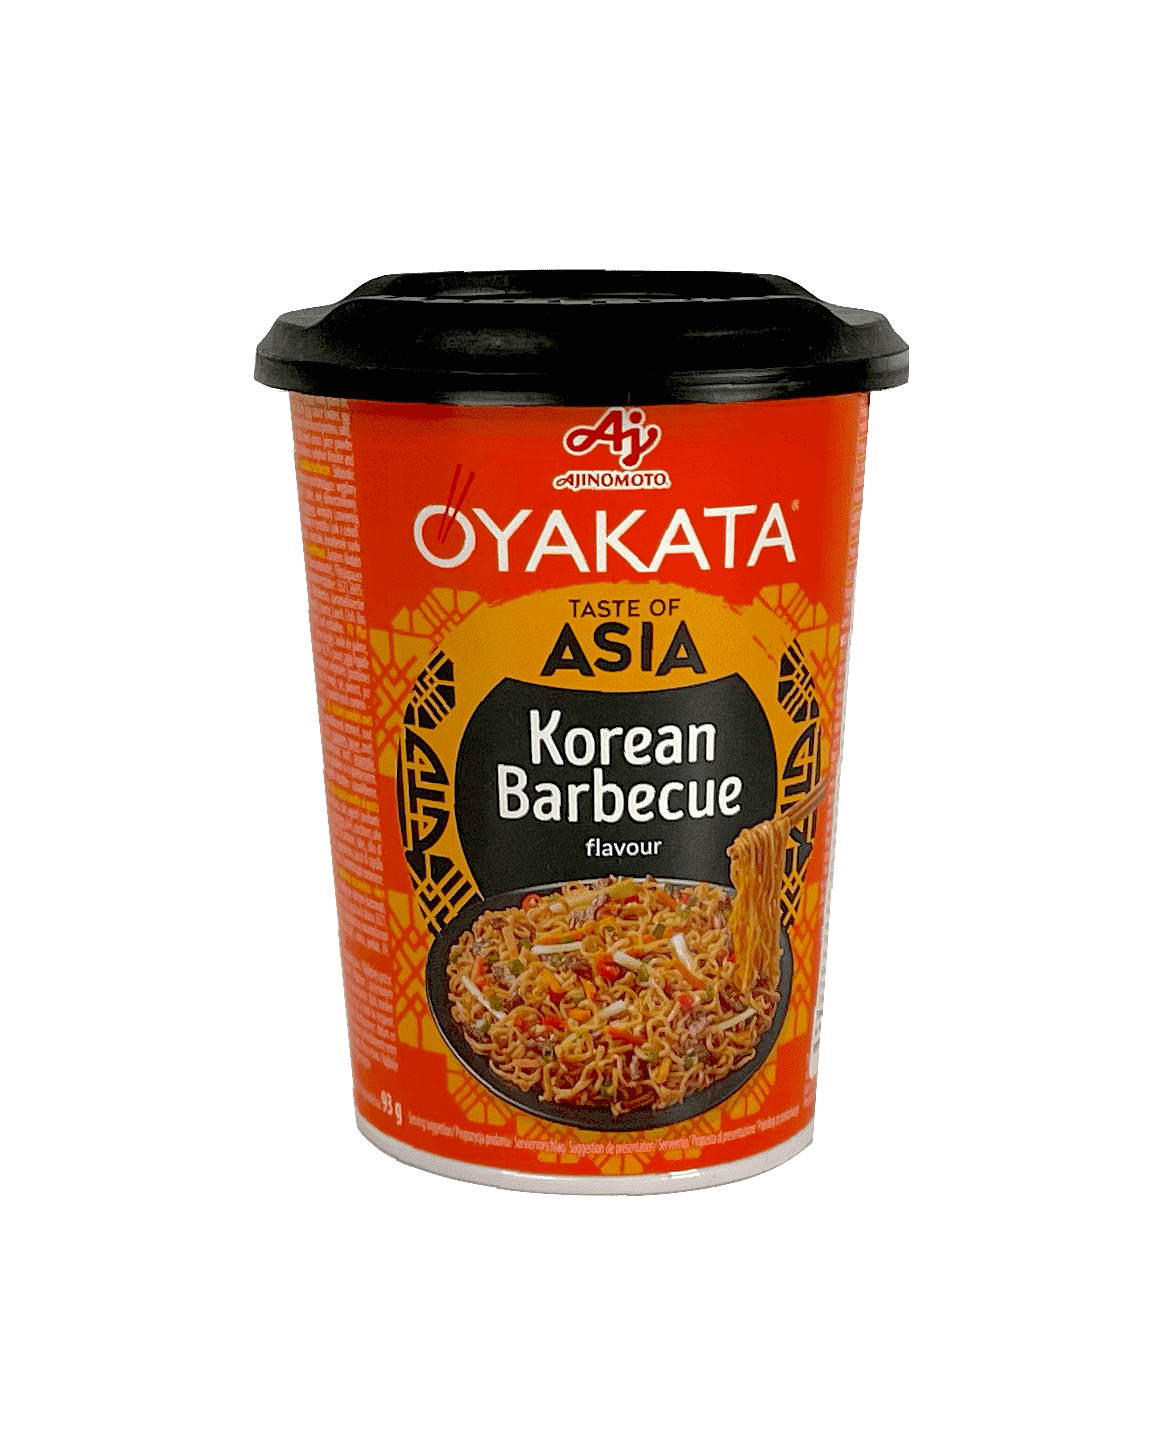 Instant Noodles Cup Korean Barbecue 93g Ajinomoto Oyakata Japan